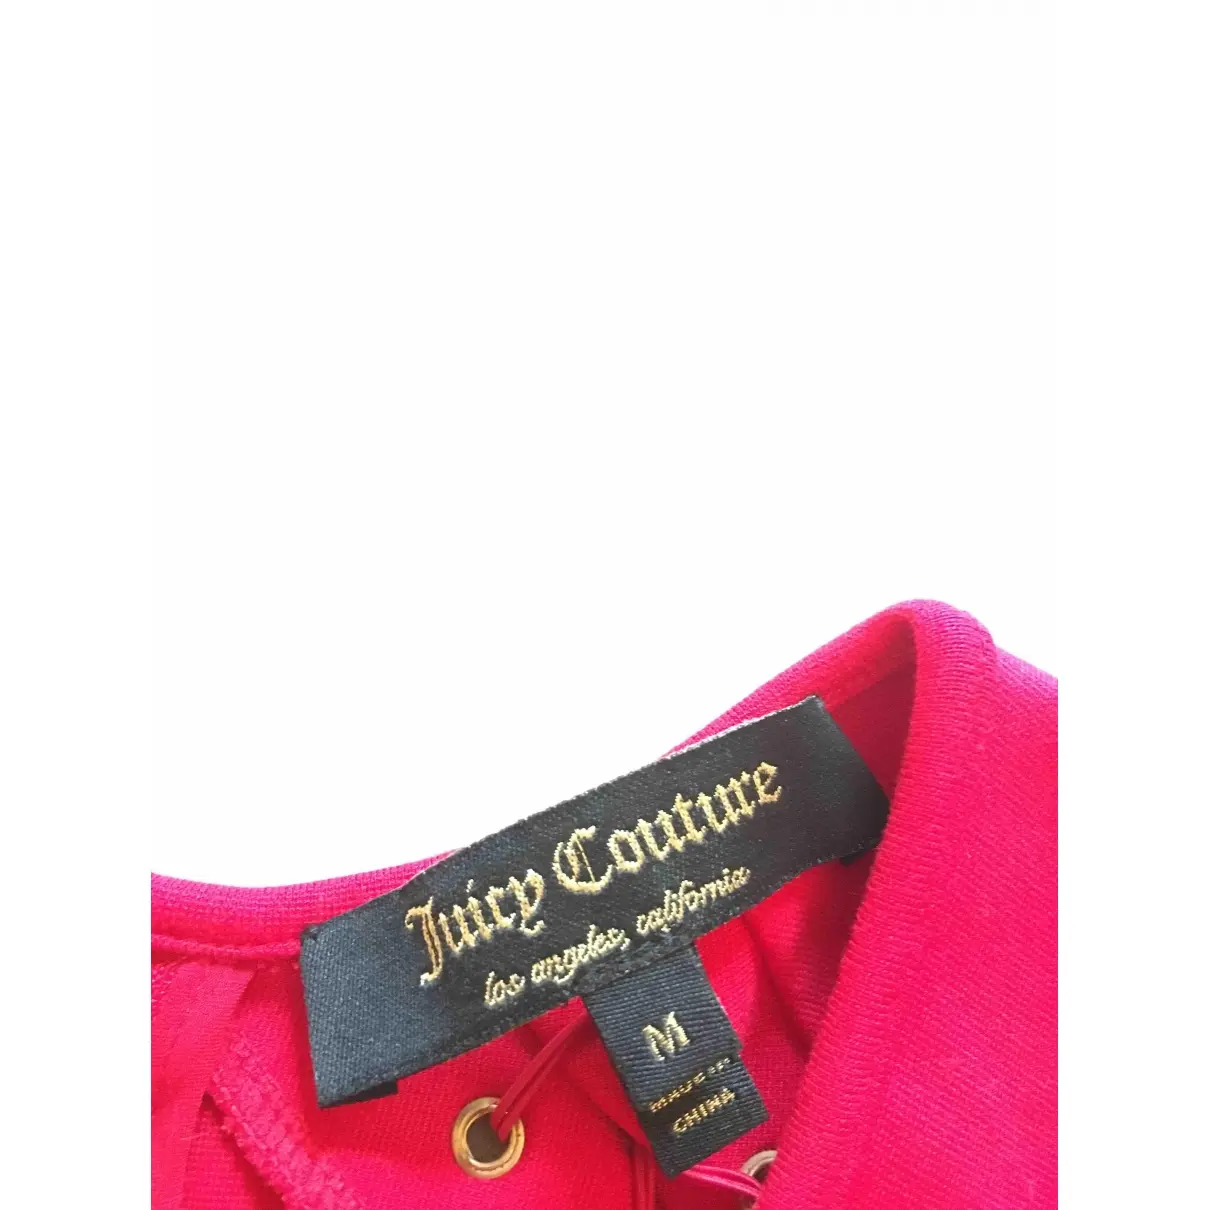 Buy Juicy Couture Dress online